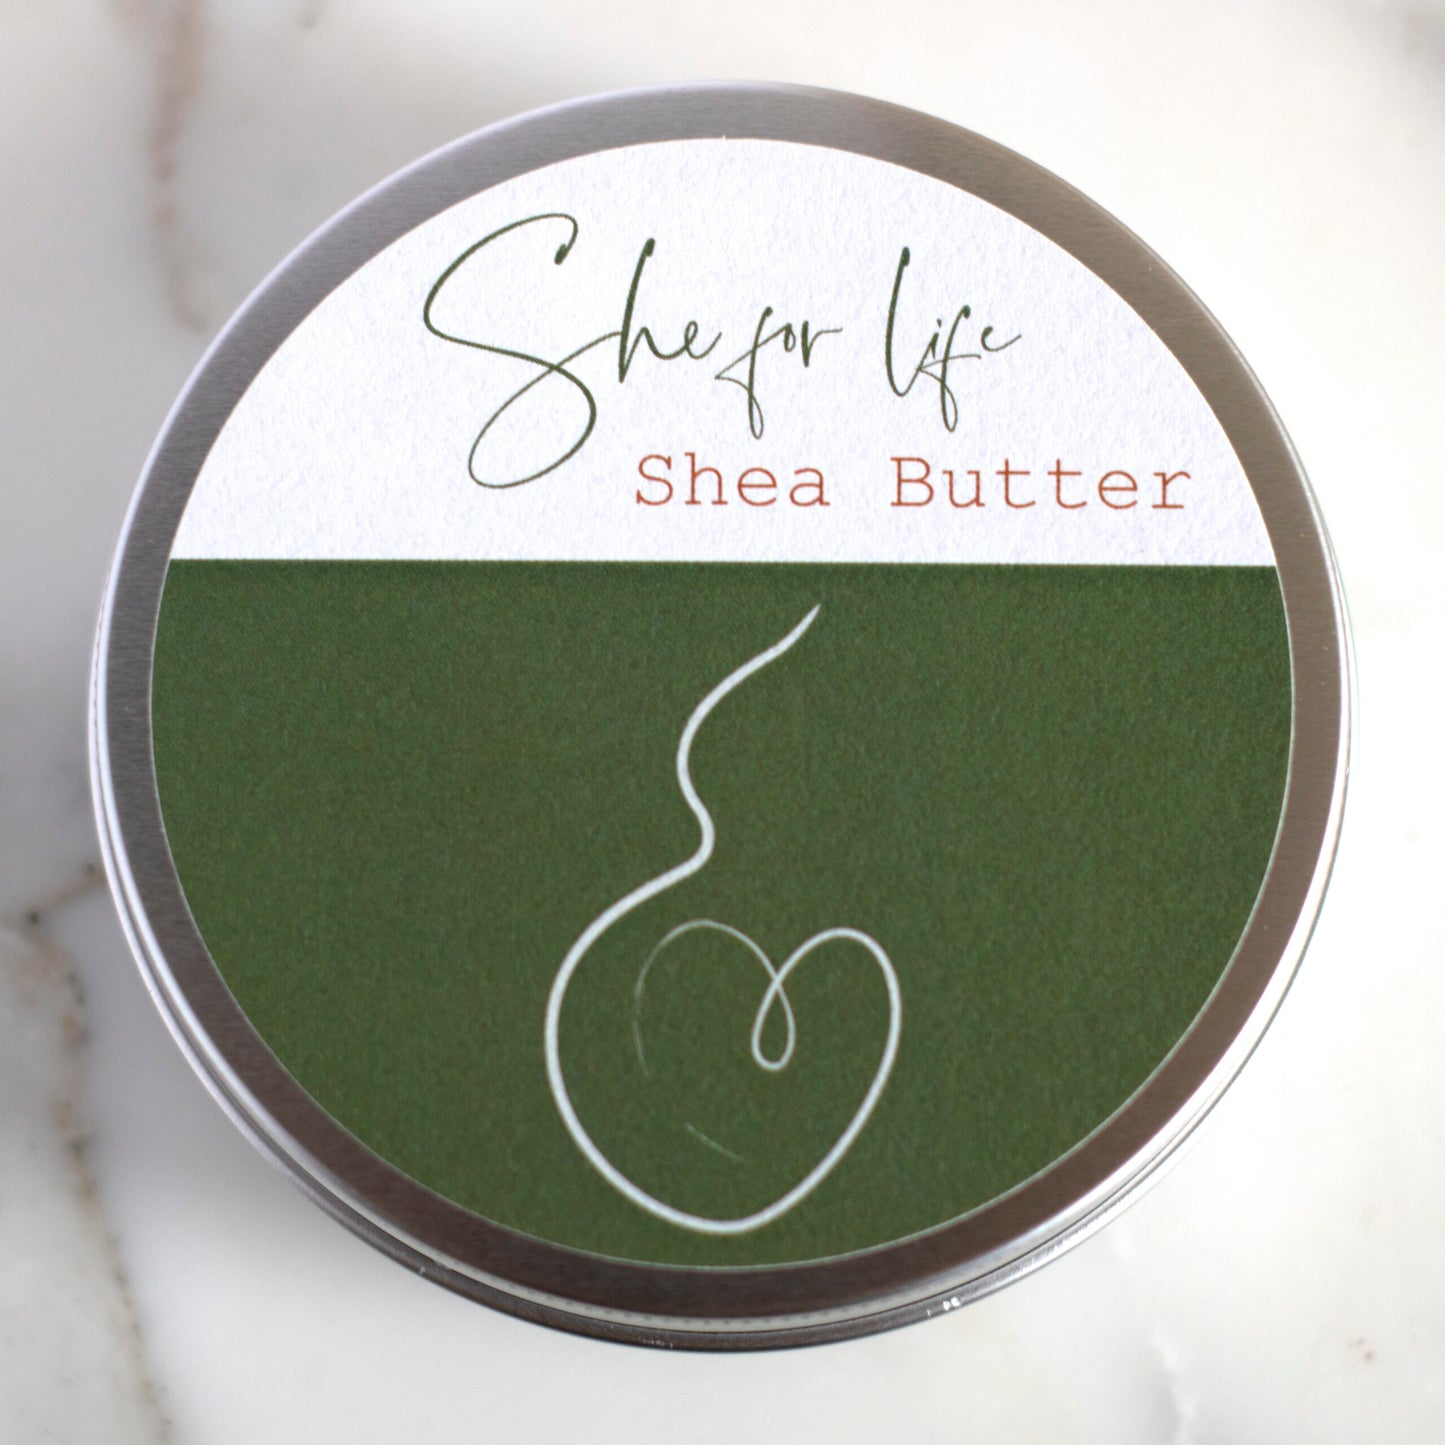 She for life - Shea Butter / Karitéboter